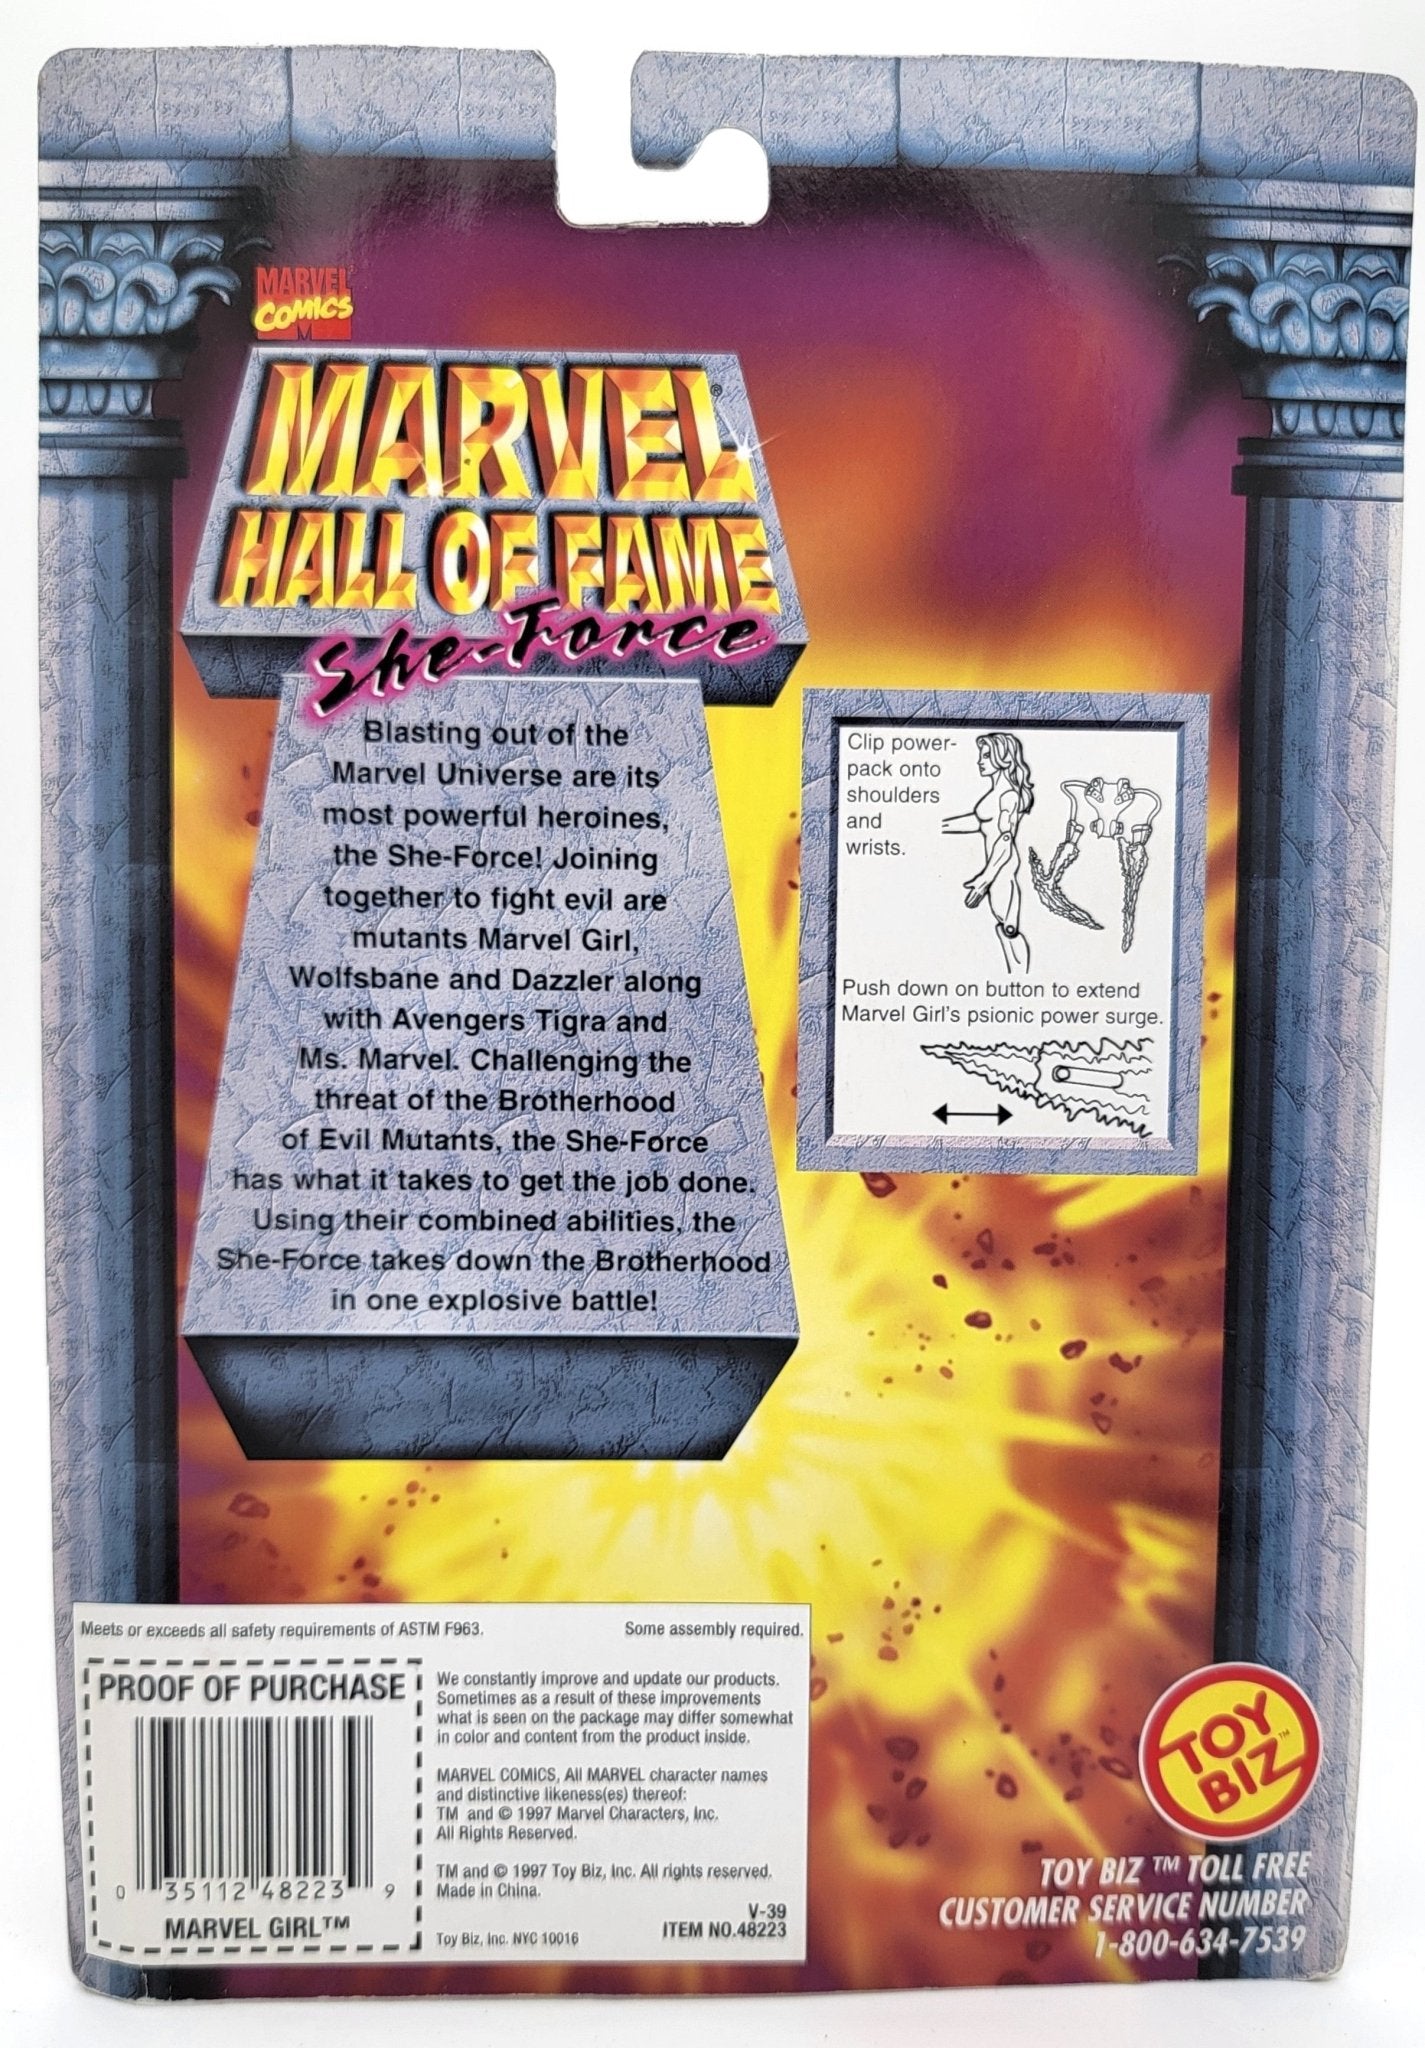 Toy Biz - Toy Biz | Marvel Hall of Fame - She Force - Marvel Girl 1997 | DVD | Vintage Marvel Action Figure - Action Figures - Steady Bunny Shop